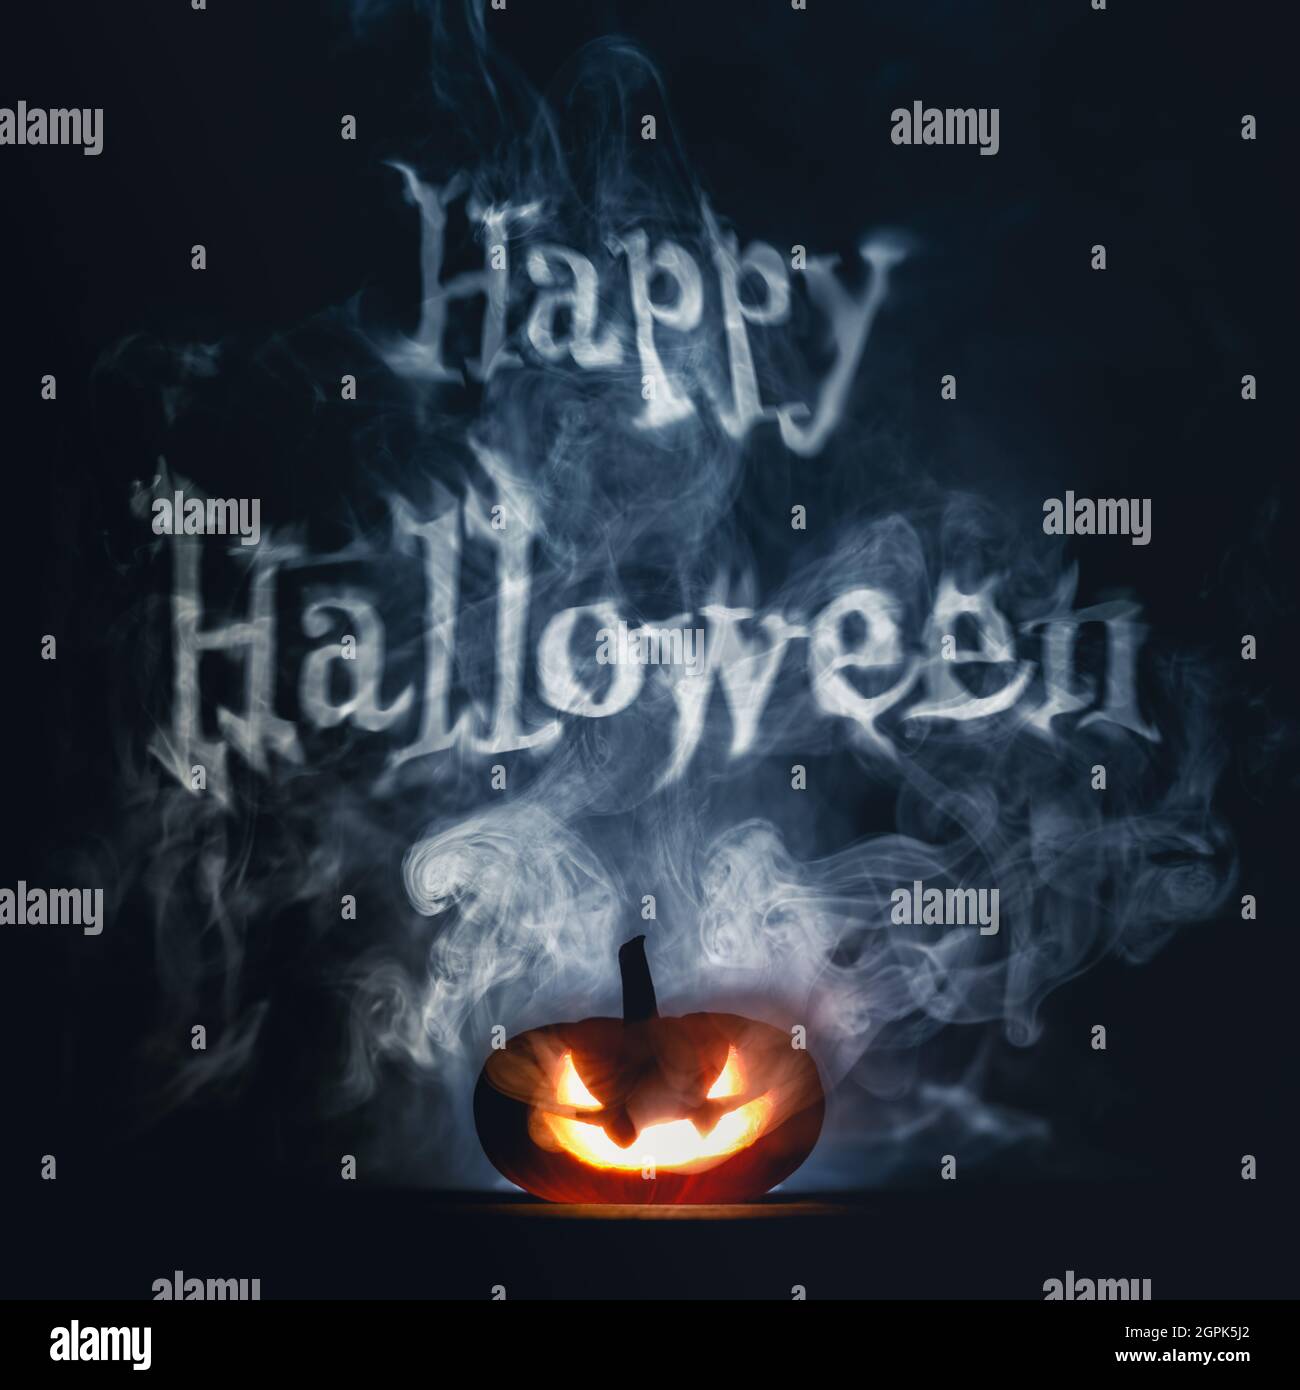 Citrouille de Halloween effrayante avec un visage sombre et effrayant taillé dans la fumée le soir d'Halloween, avec un texte joyeux d'Halloween. Banque D'Images